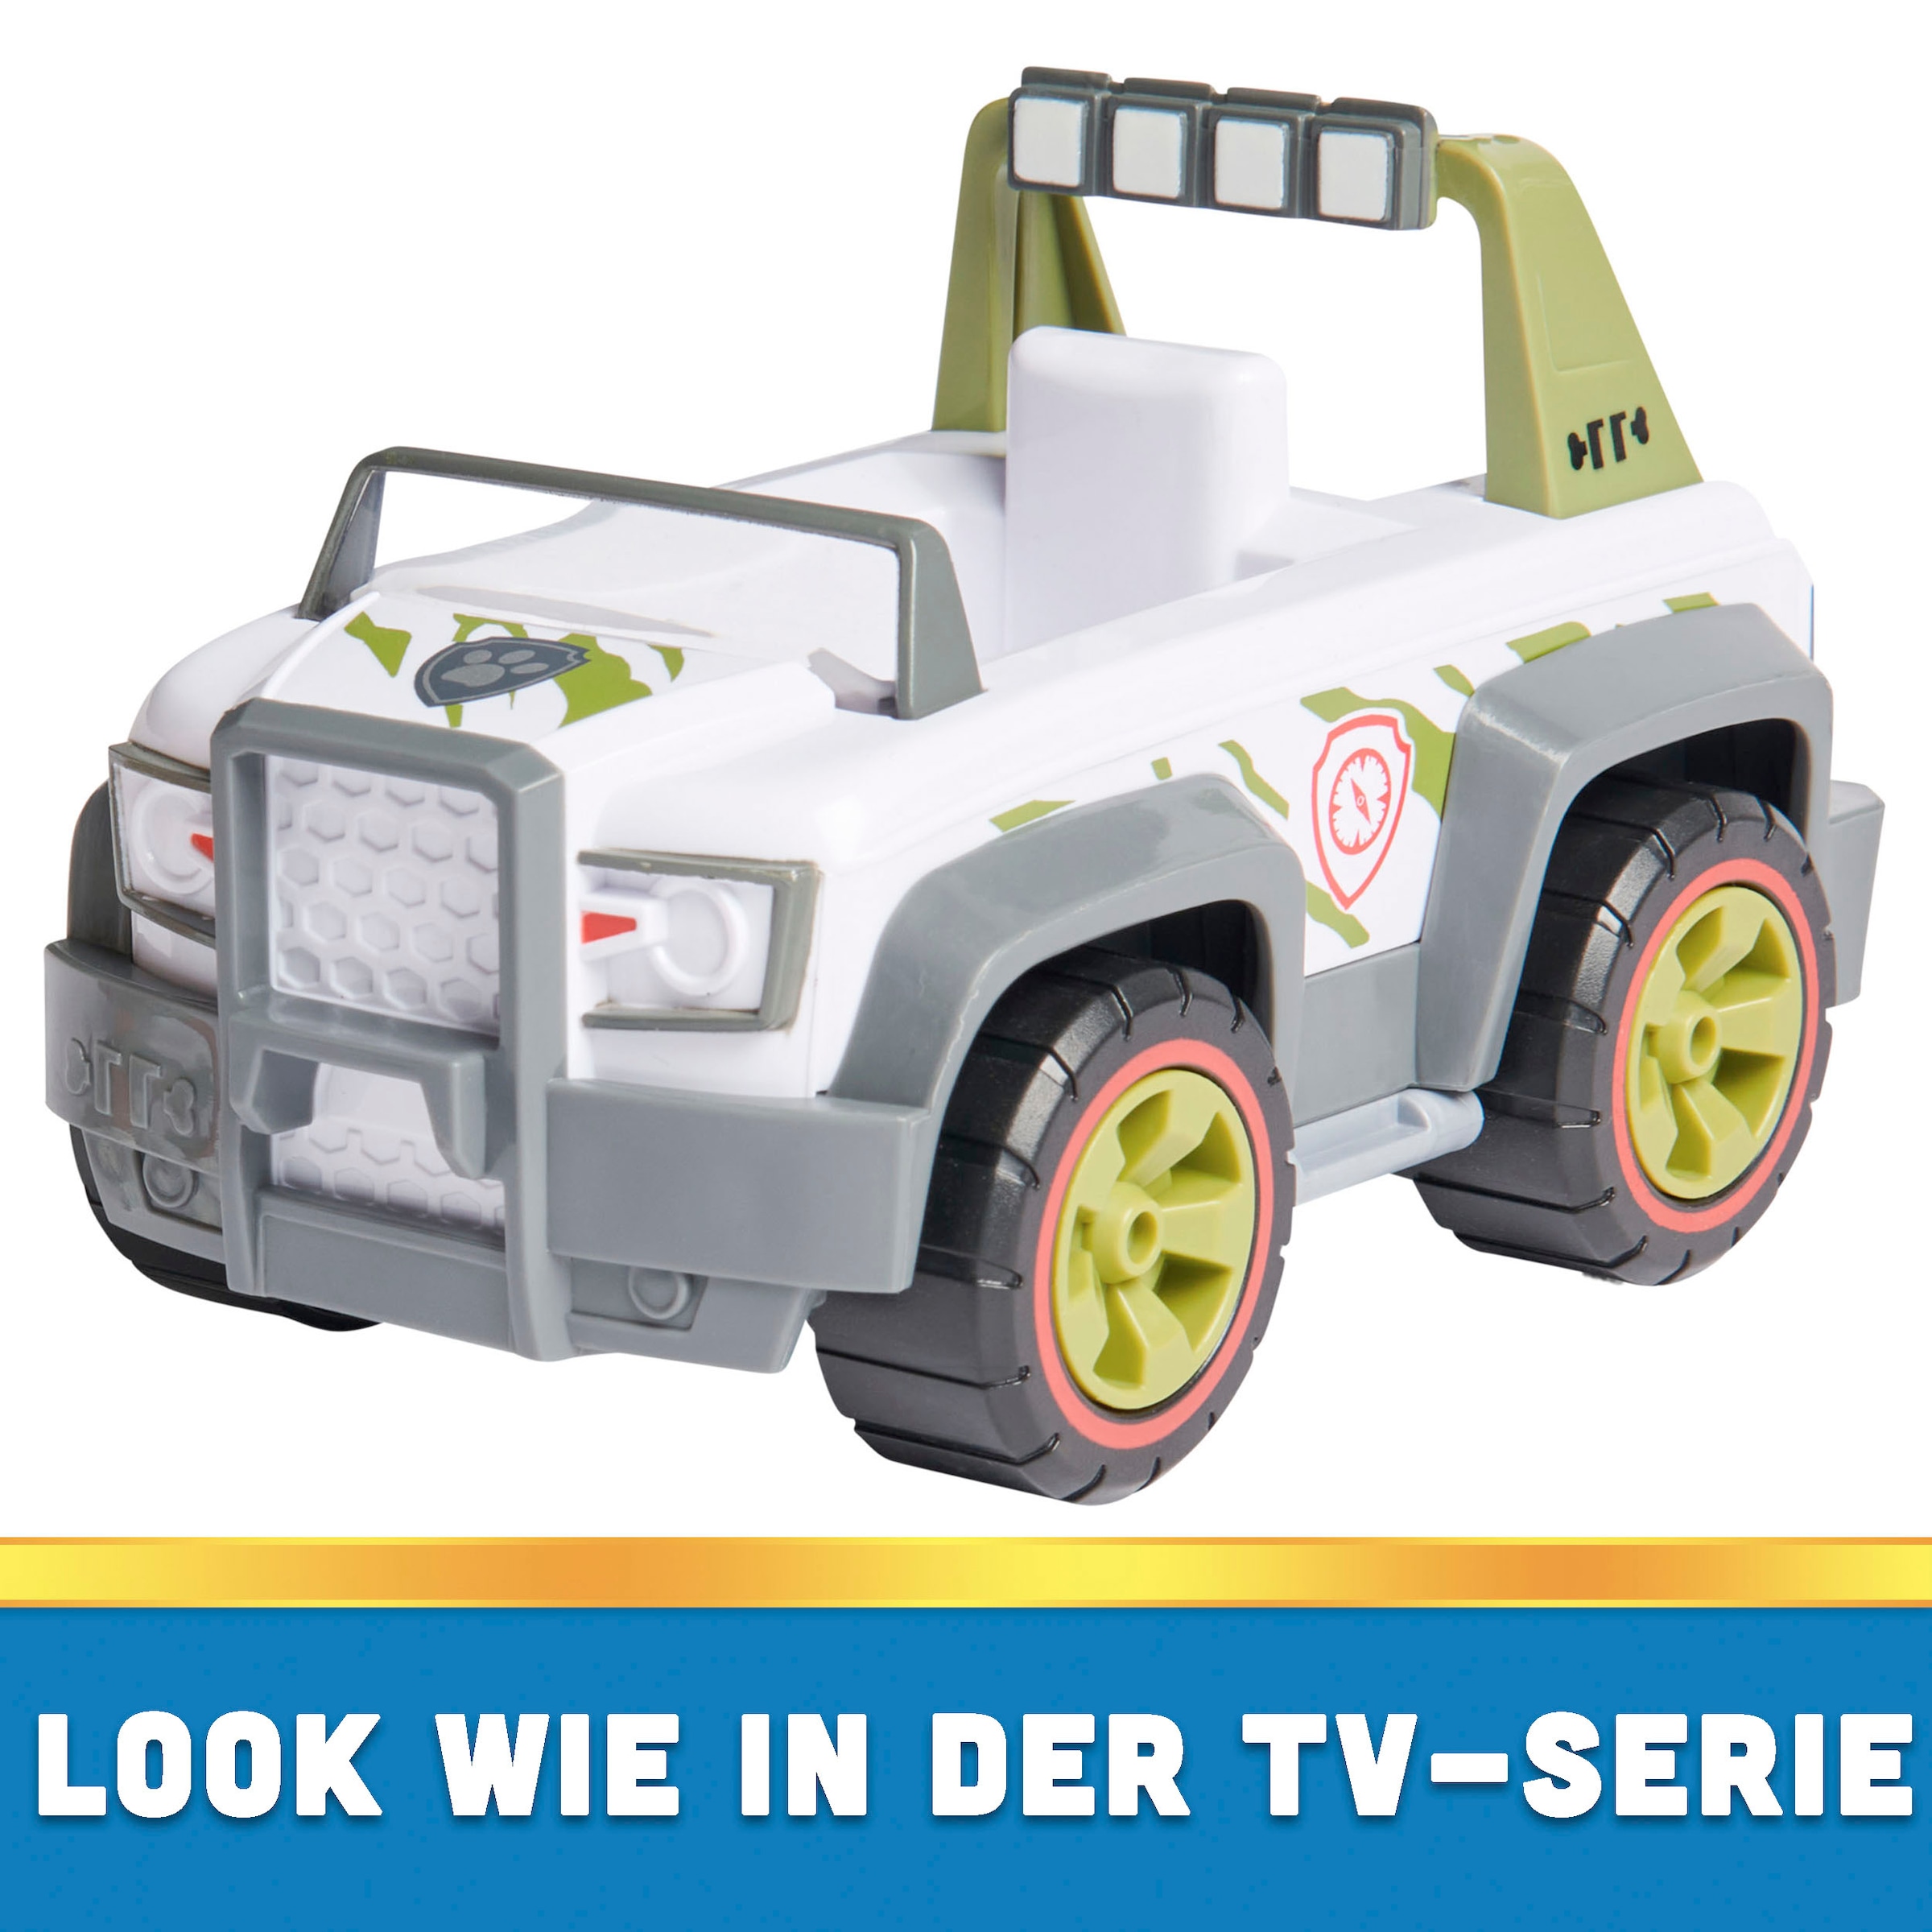 Spin Master Spielzeug-Auto »Paw Patrol - Sust. Basic Vehicle Tracker«, zum Teil aus recycelten Material